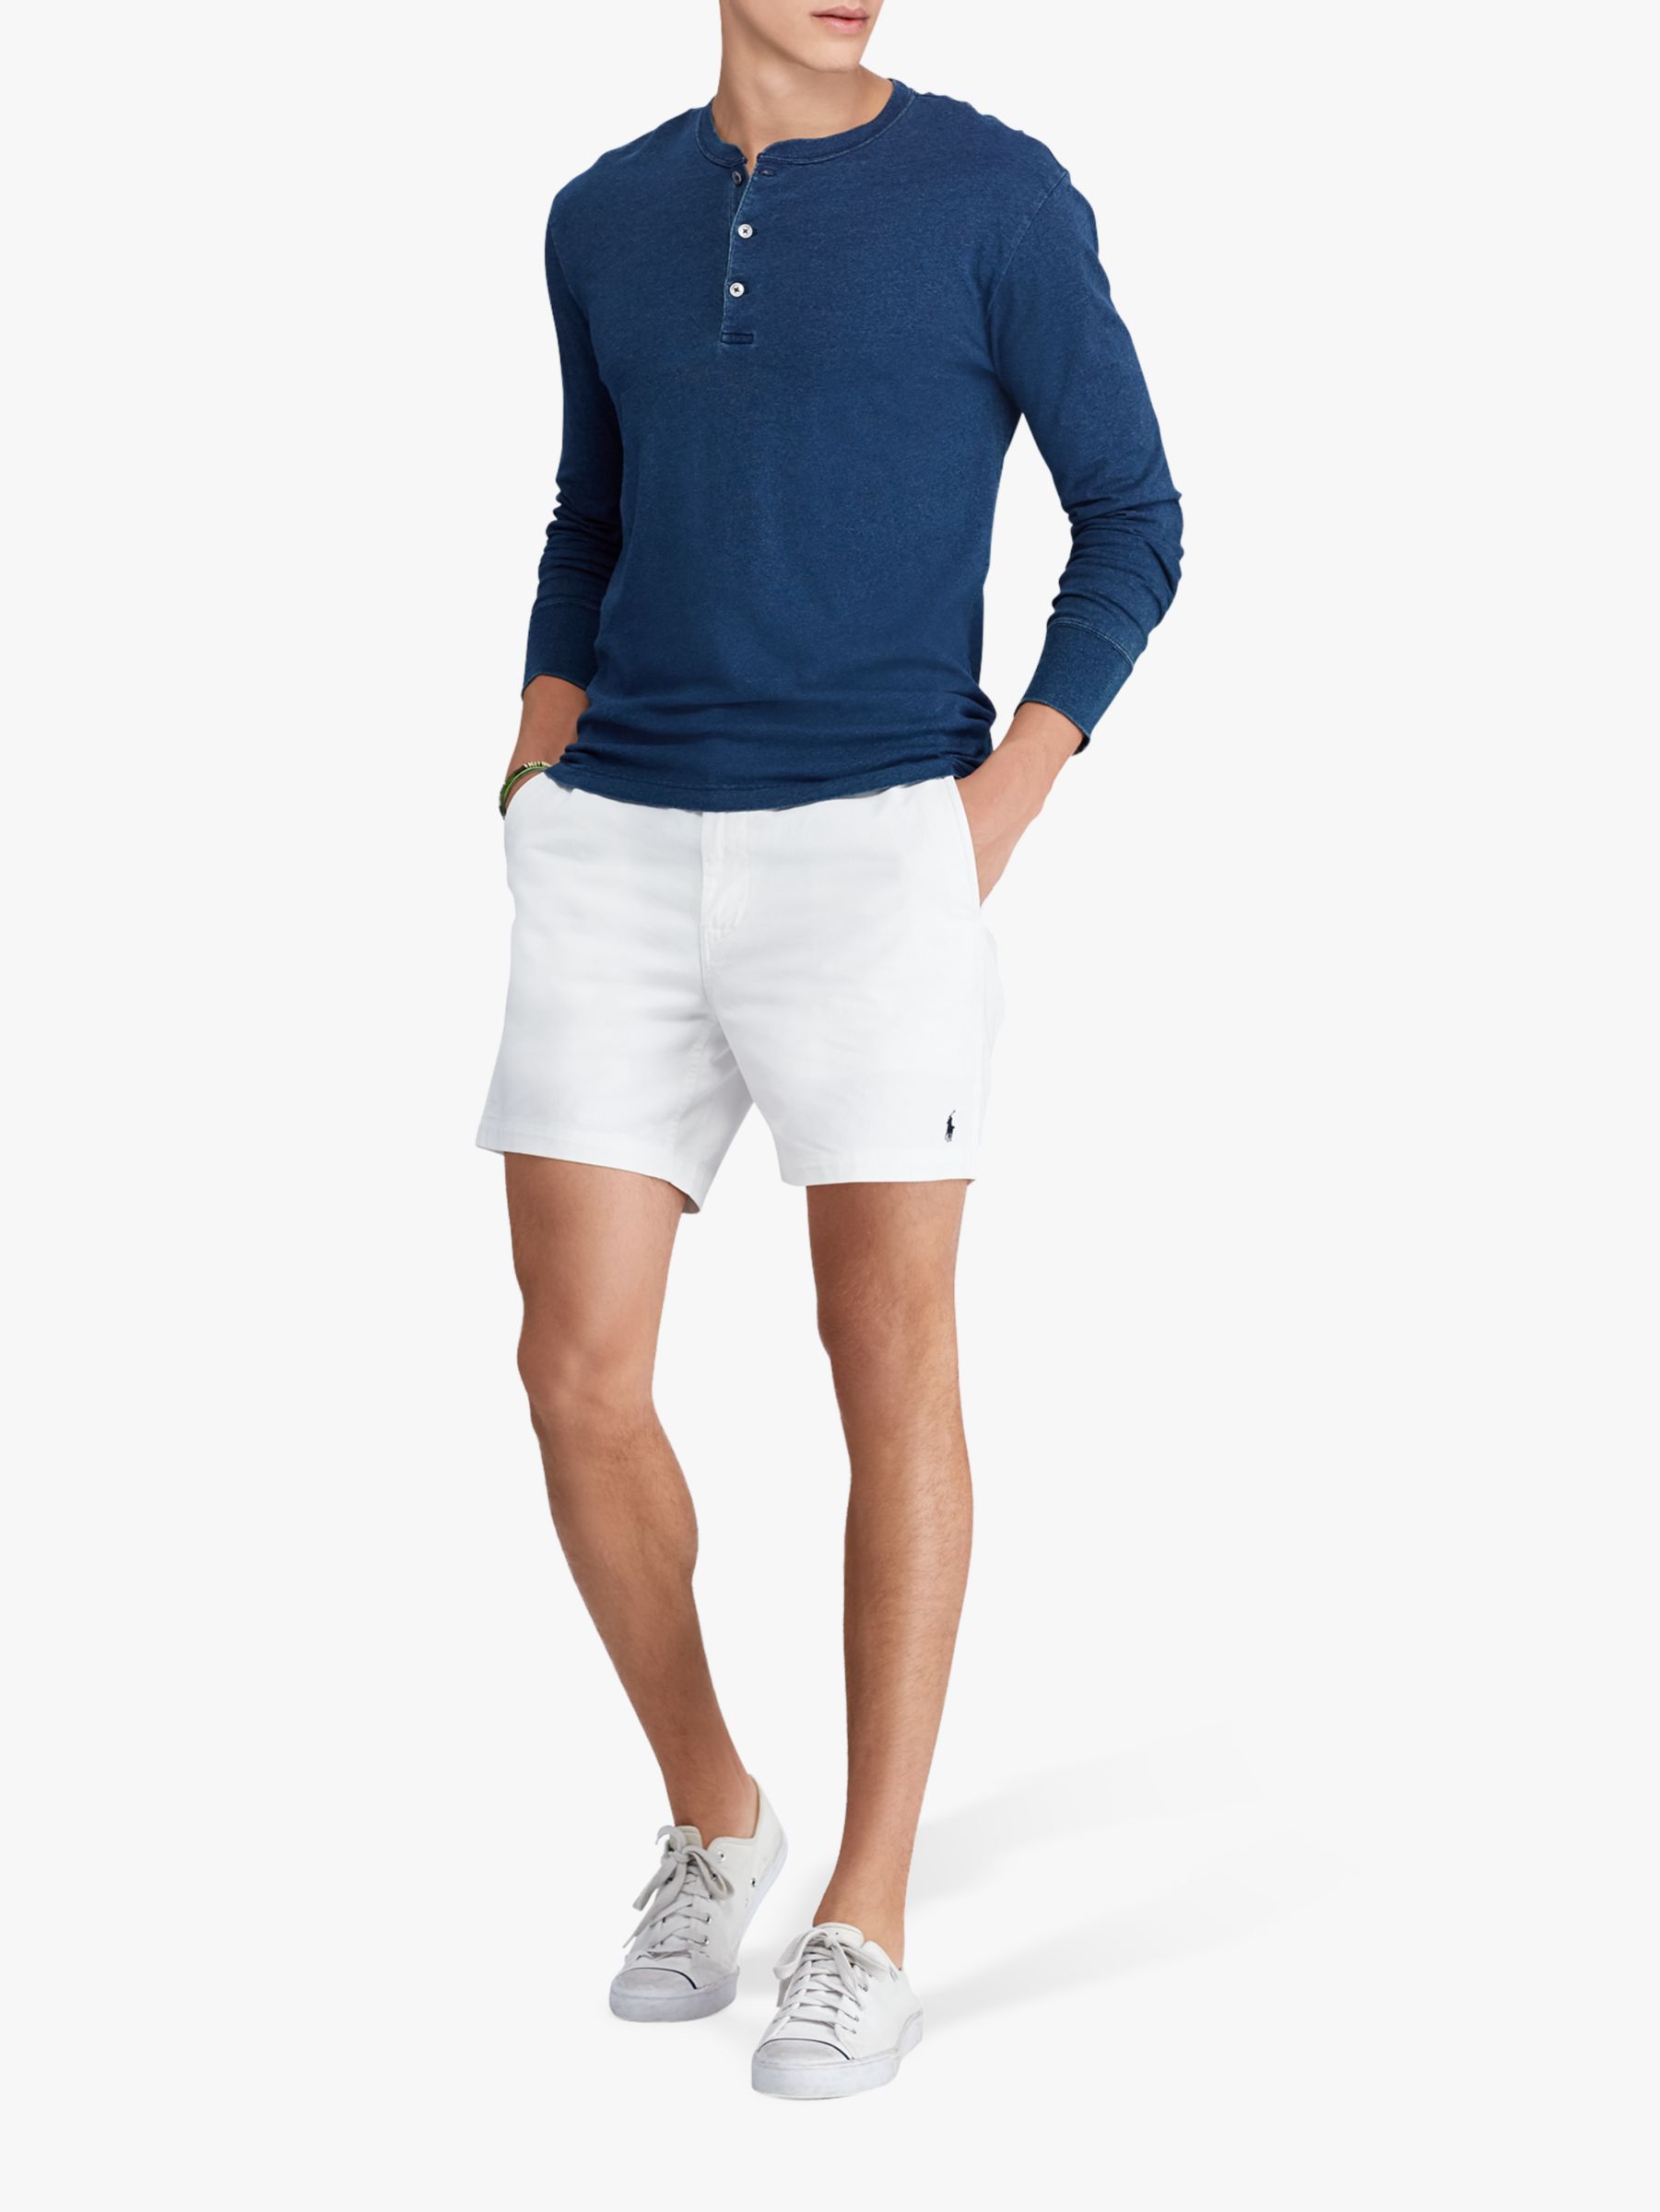 polo prepster shorts white